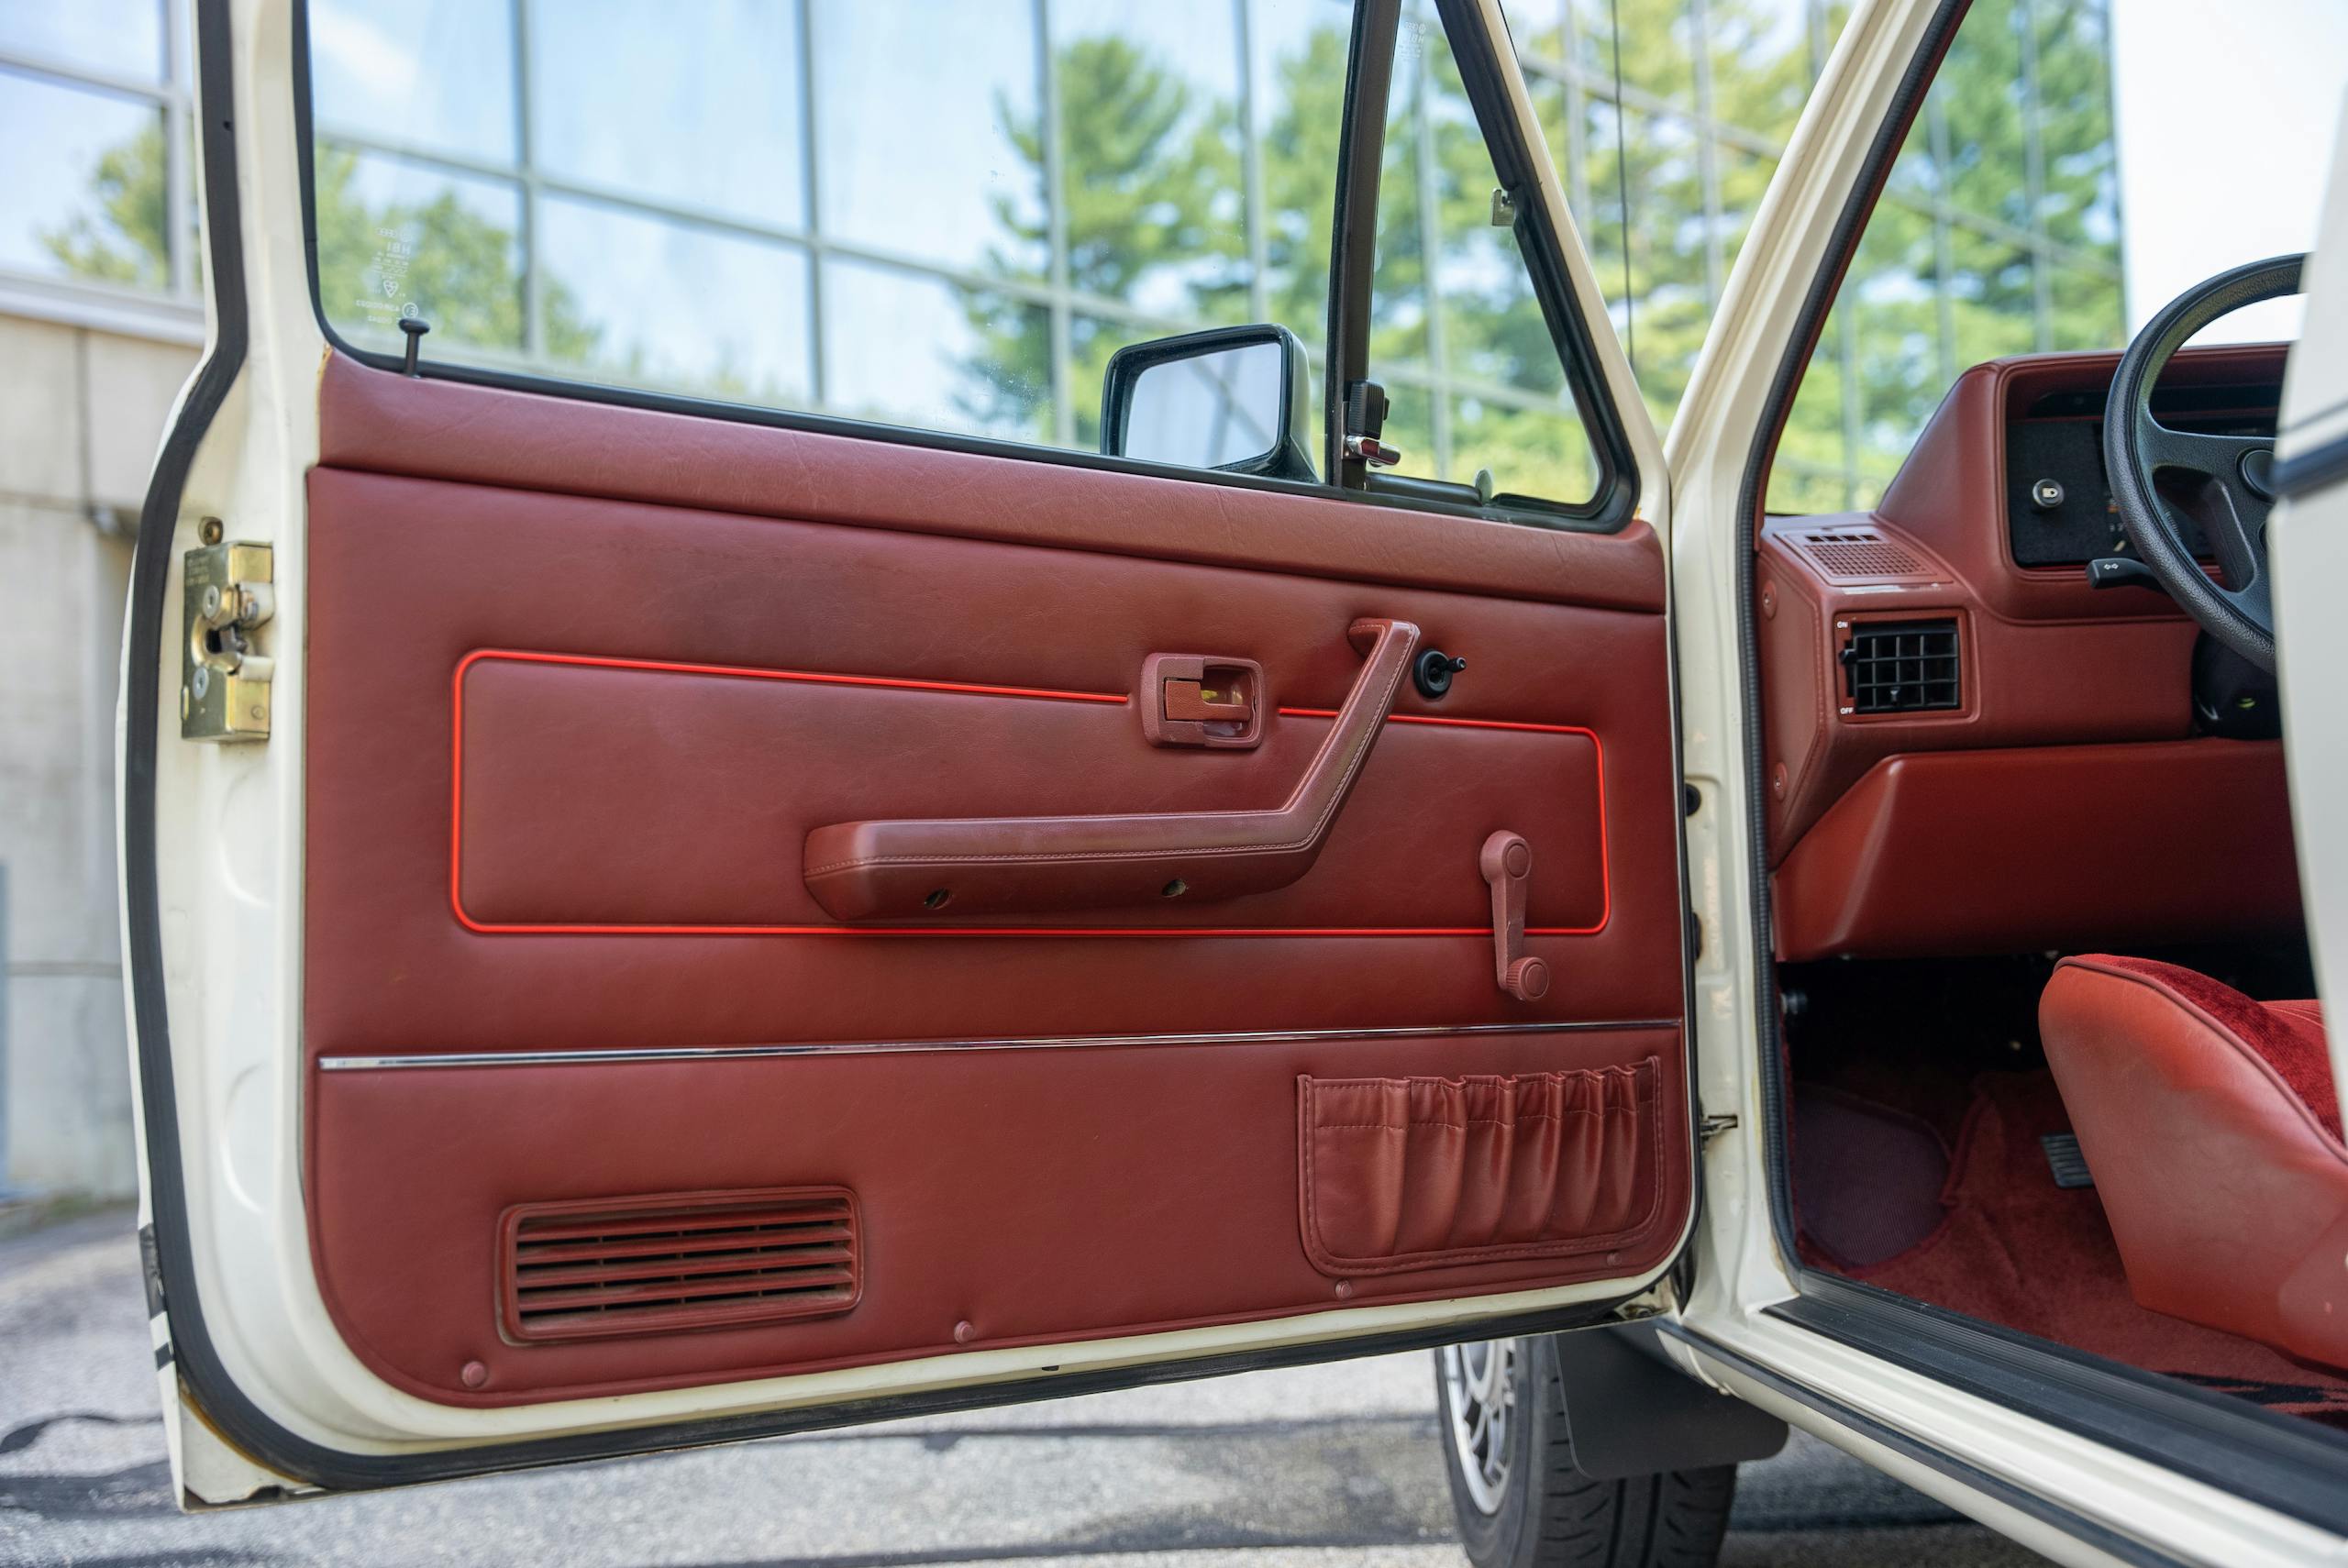 1983 Volkswagen Rabbit GTI Callaway hot hatch door panel detail